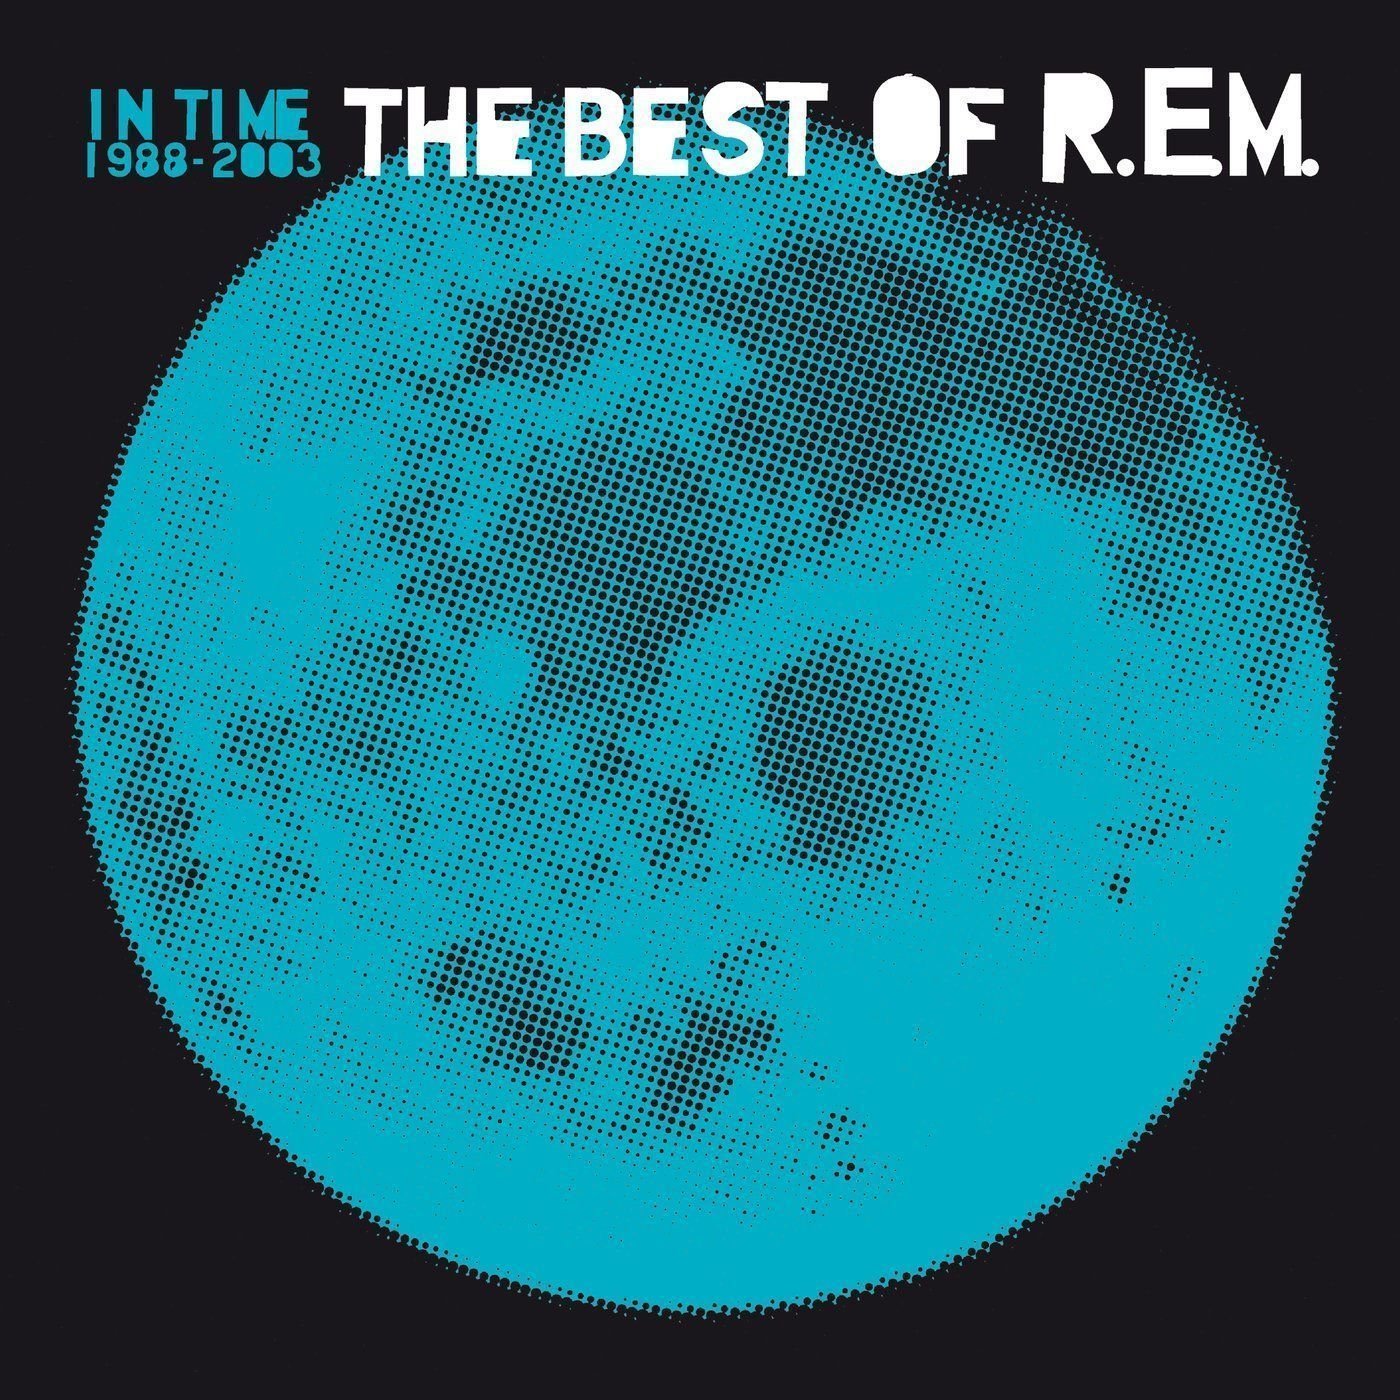 Vinyl Record R.E.M. - In Time: The Best Of R.E.M. 1988-2003 (2 LP)